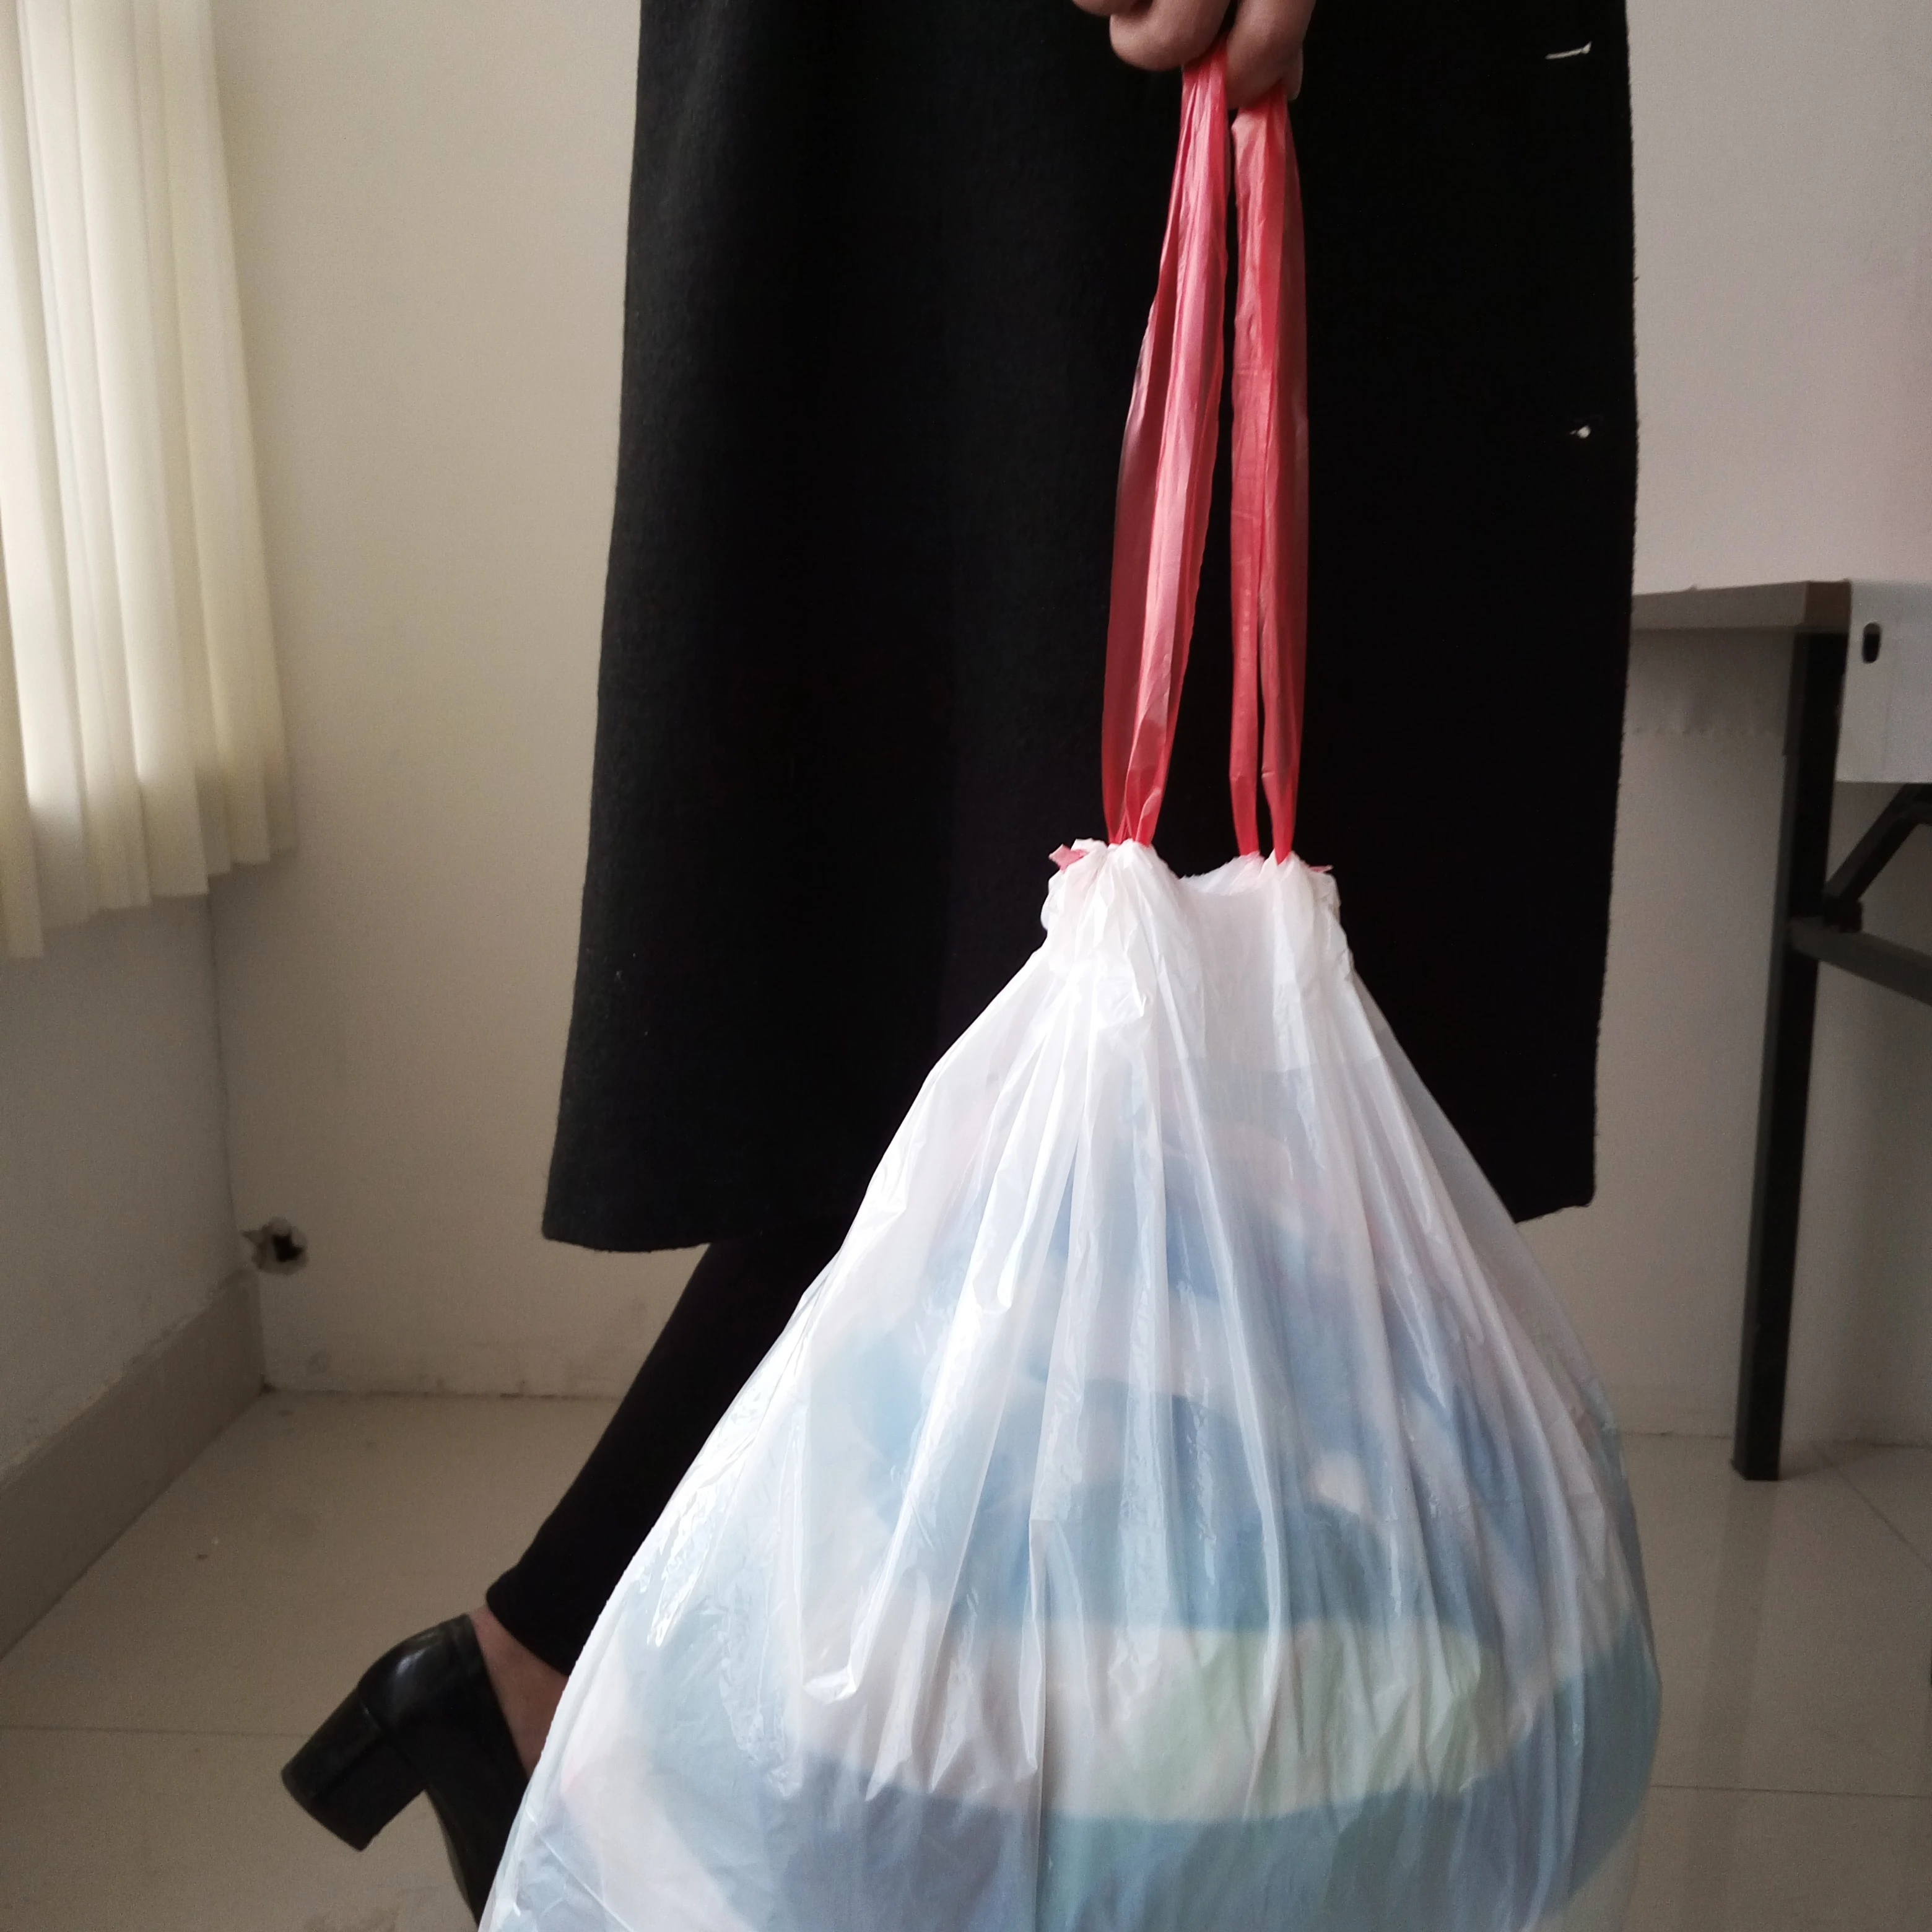 13 Gallon plastic garbage bag, Drawstring garbage bag